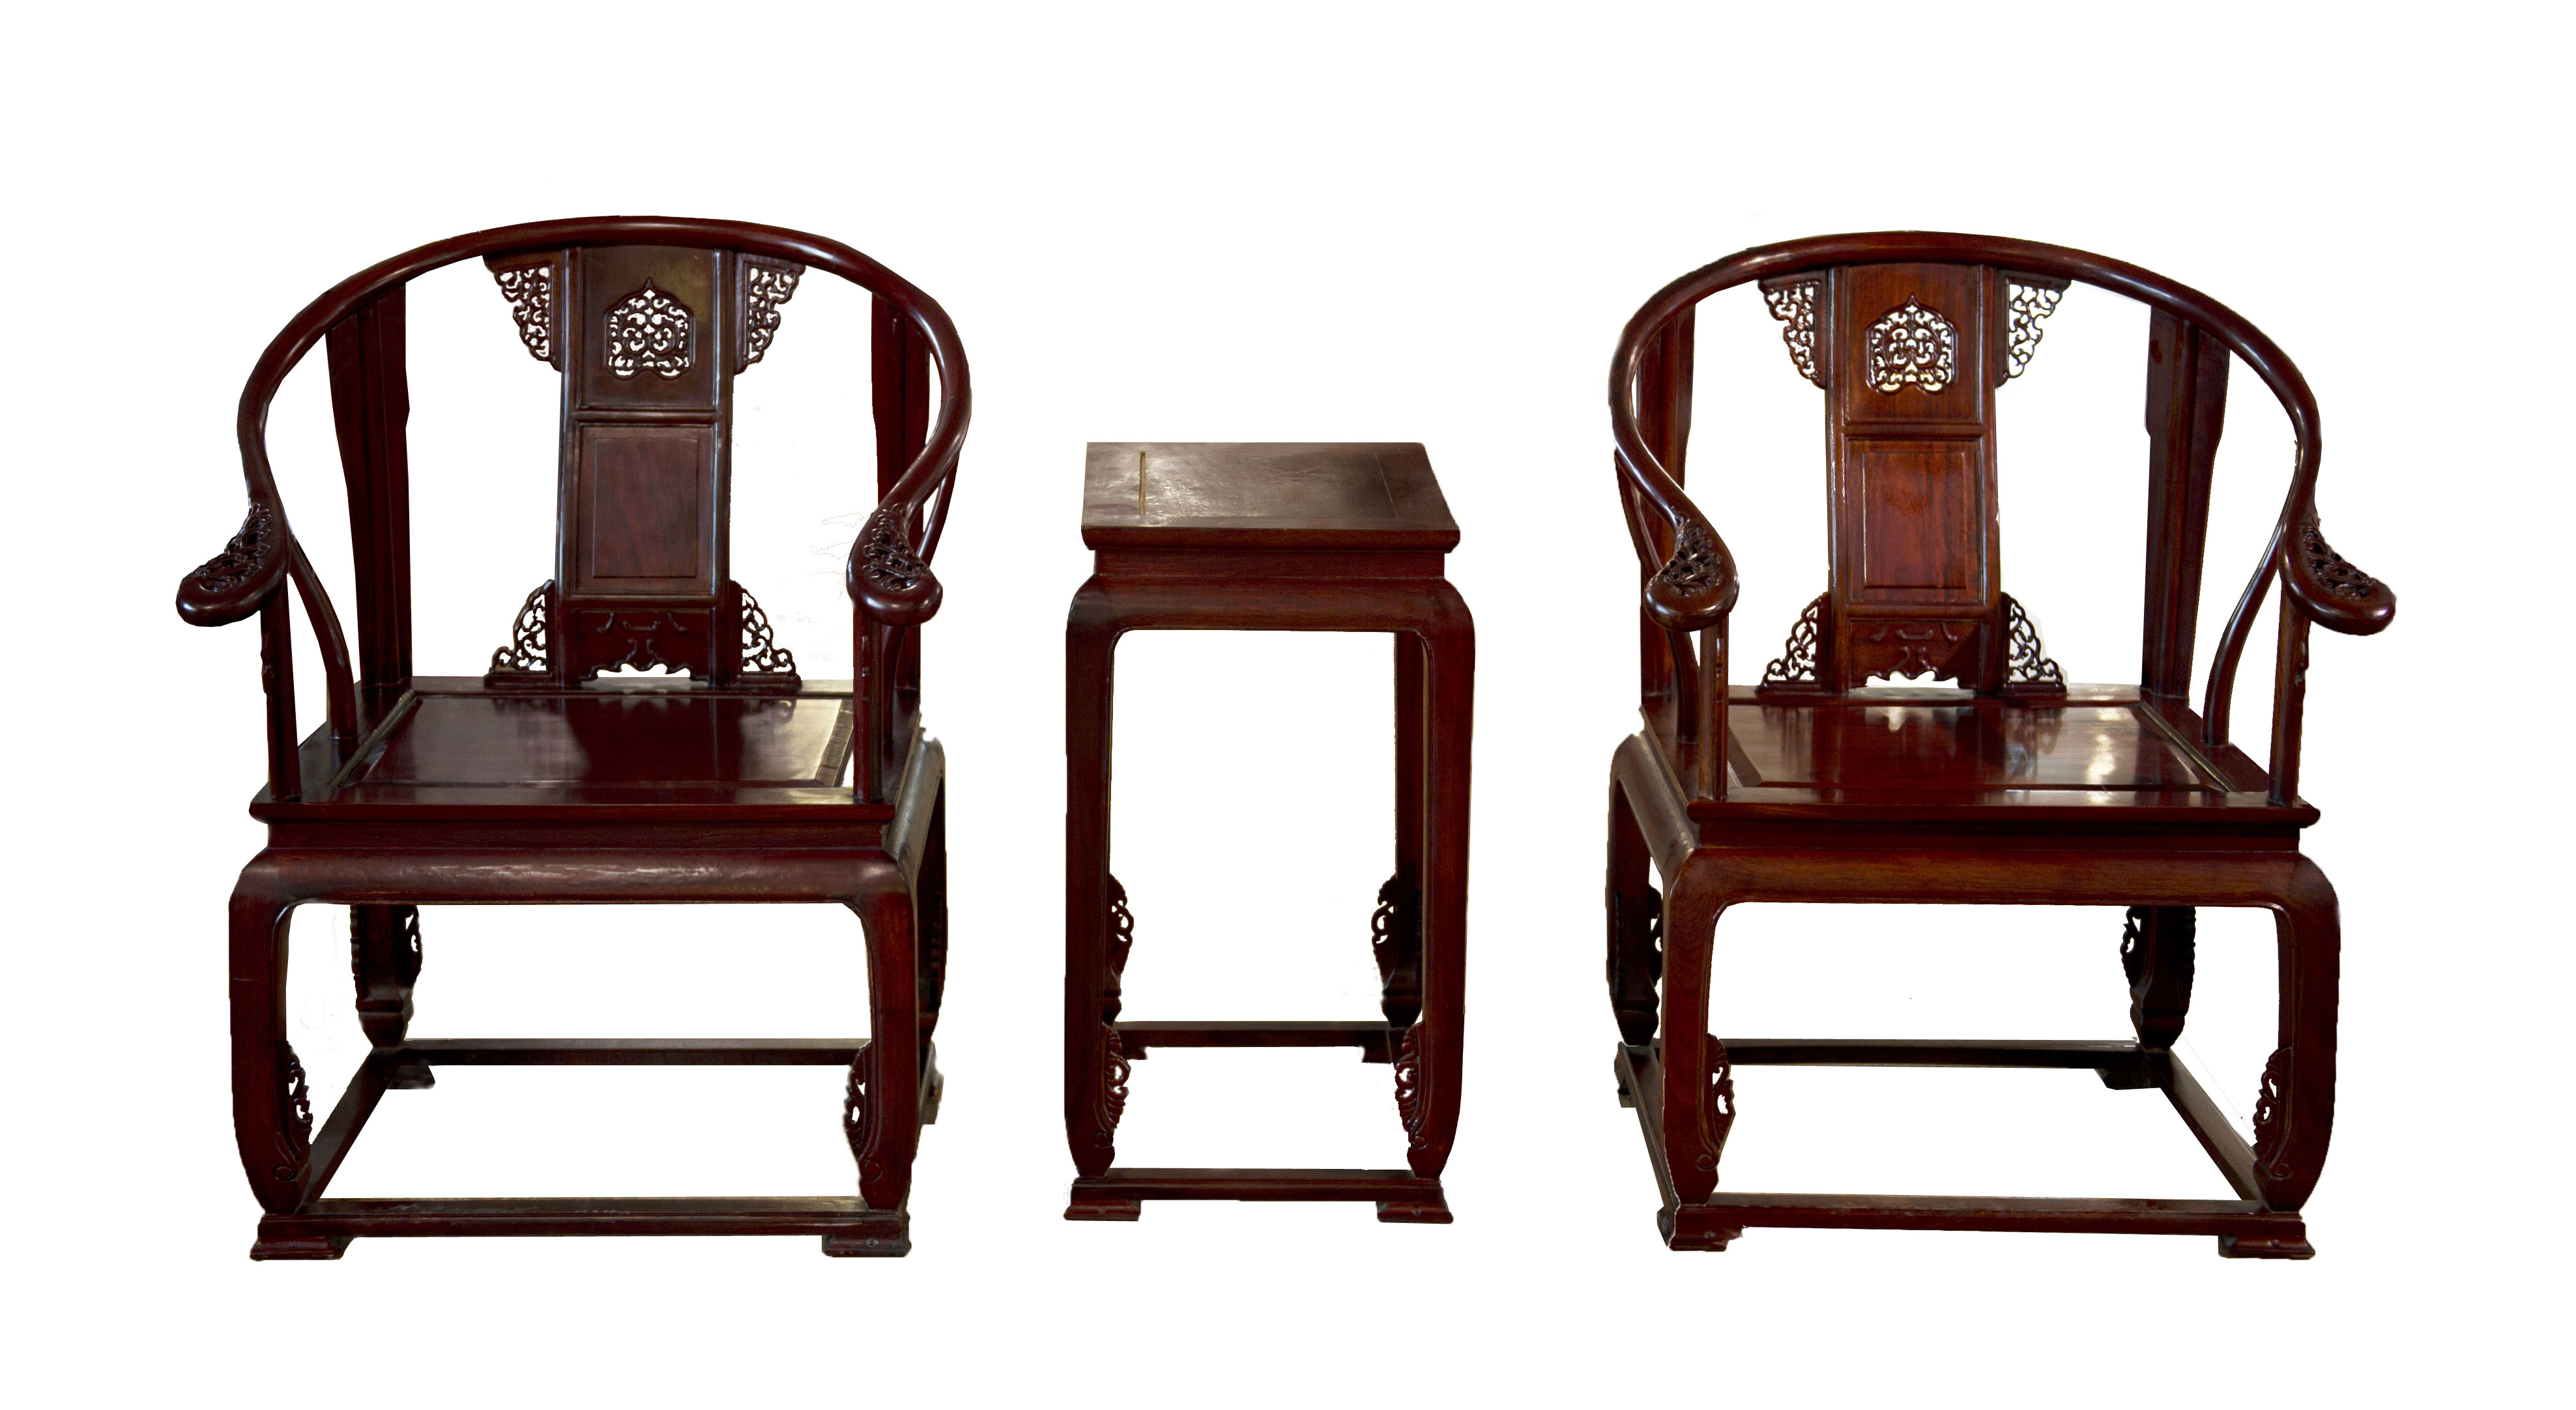 中式设计空间选用圈椅所蕴含的千古智慧